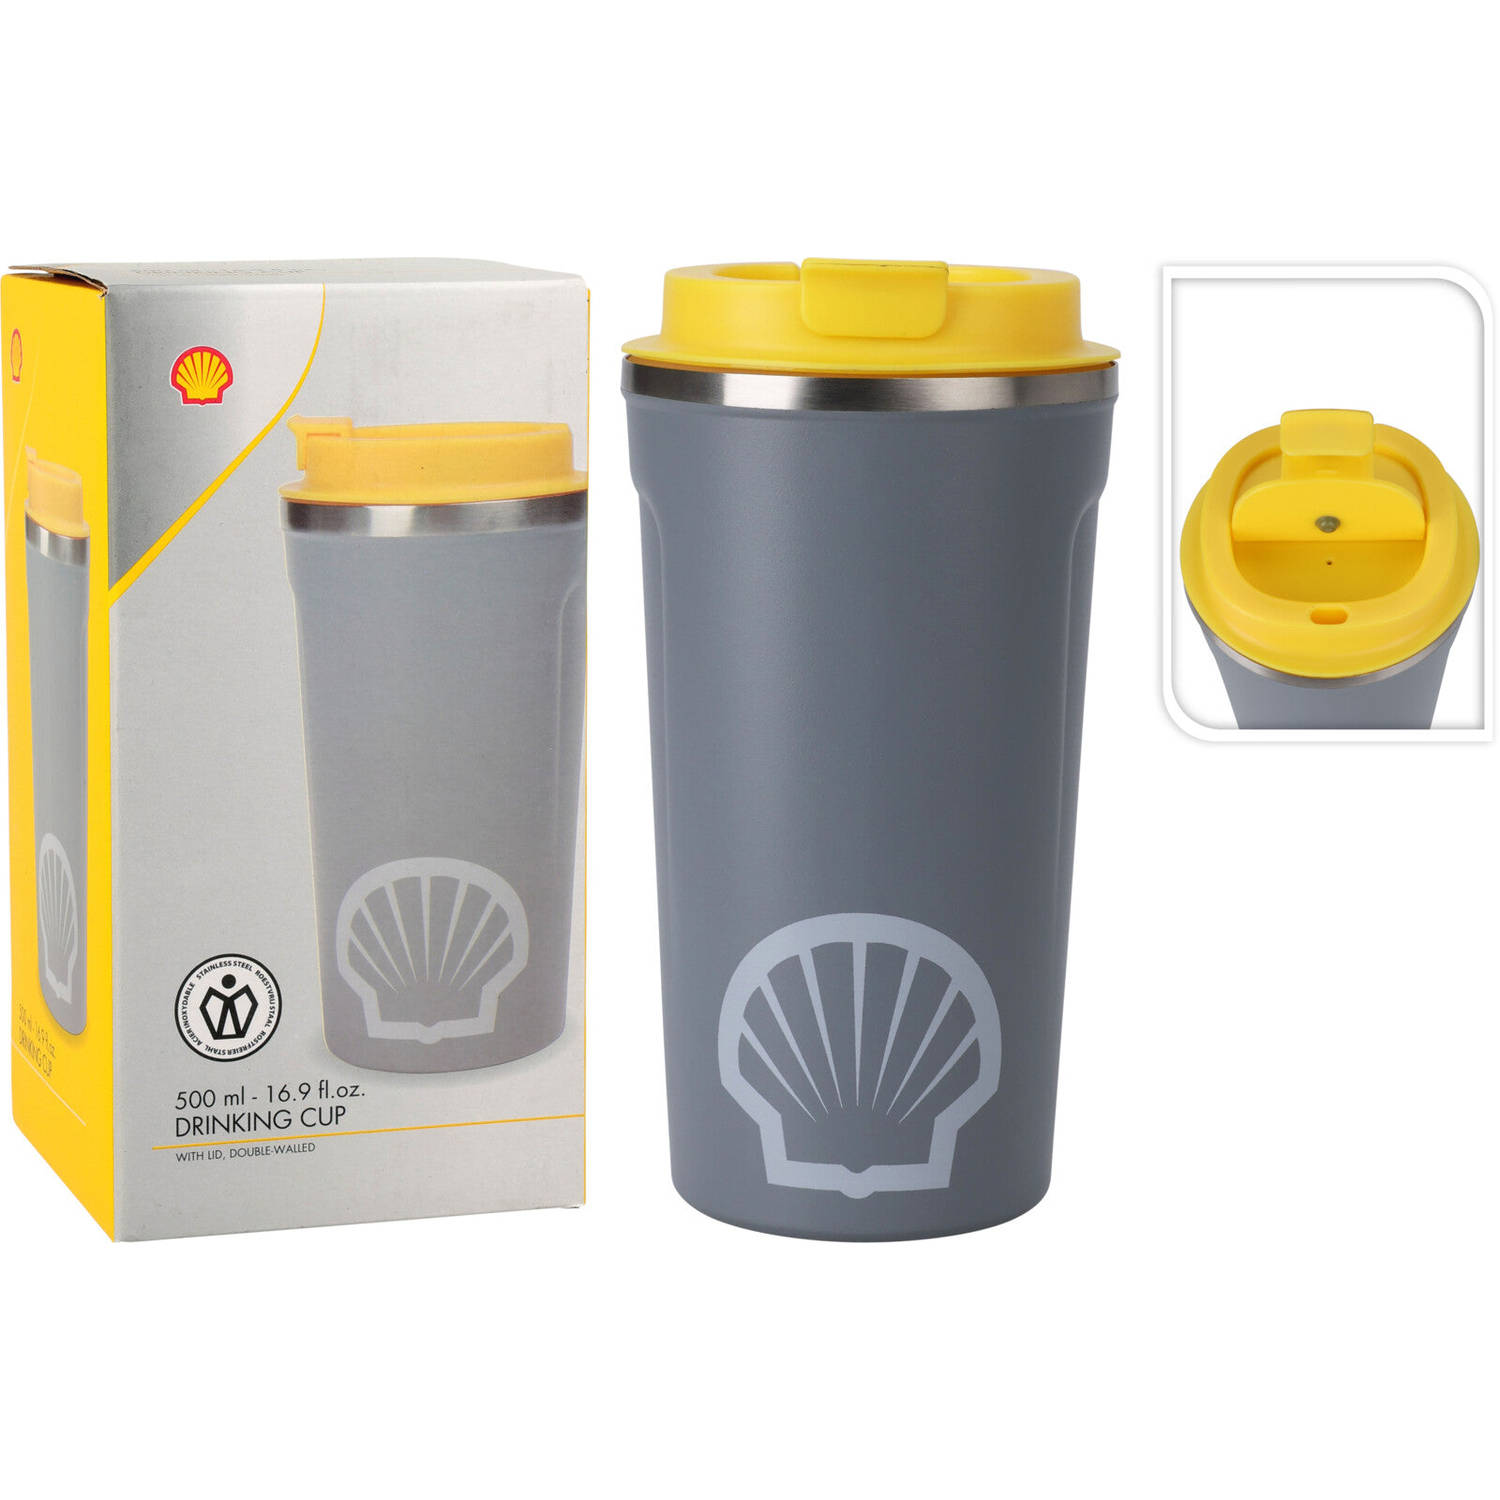 Shell Drinkbeker - Drinkfles - Waterfles To Go - 500ml - BPA-Vrij - Grijs/Geel